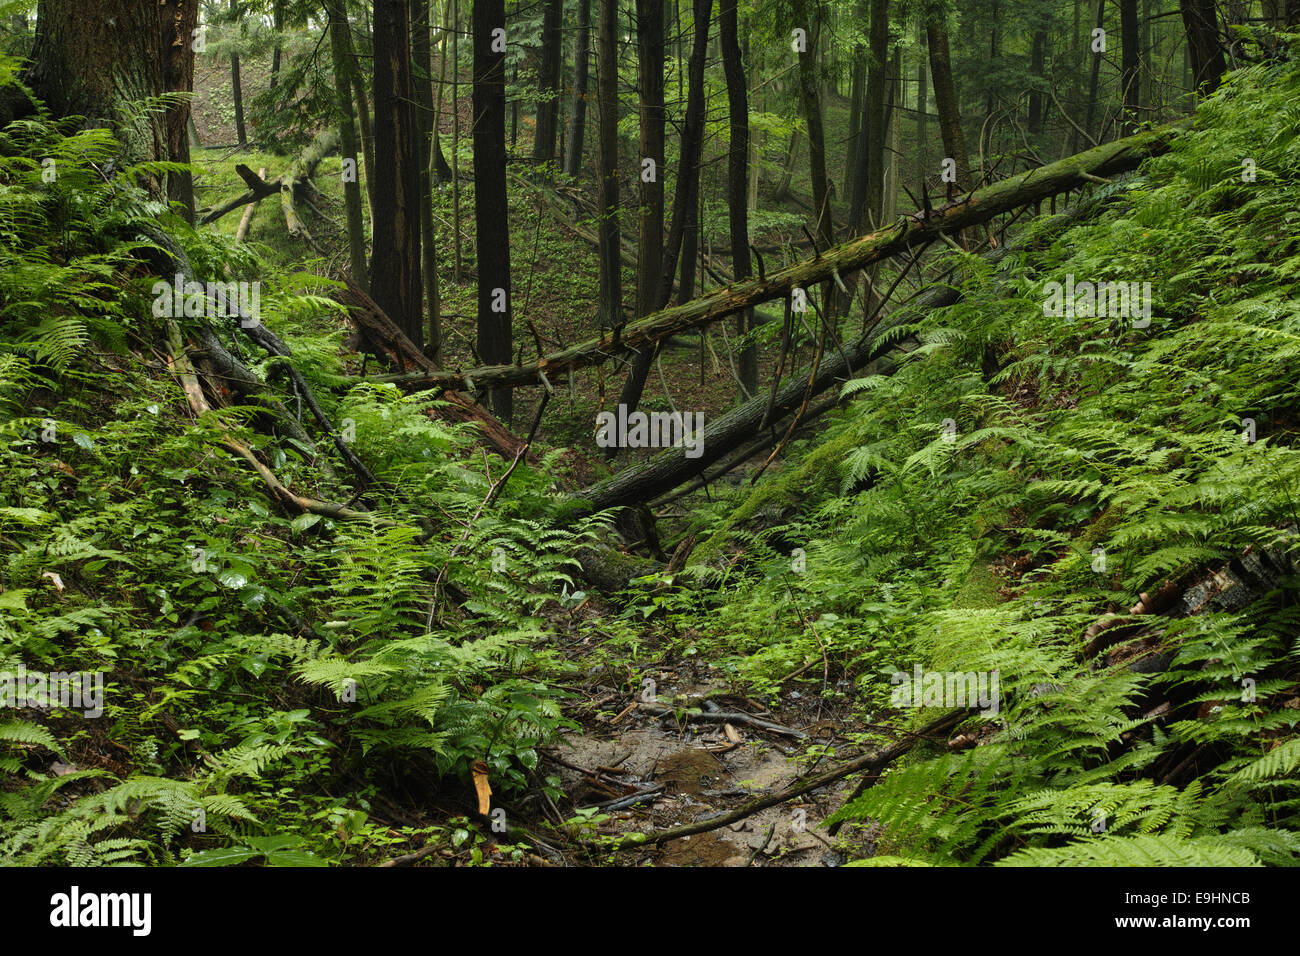 Ein üppiger Wald voller Farne Pflanzen liefert Sauerstoff für den Planeten. Stockfoto